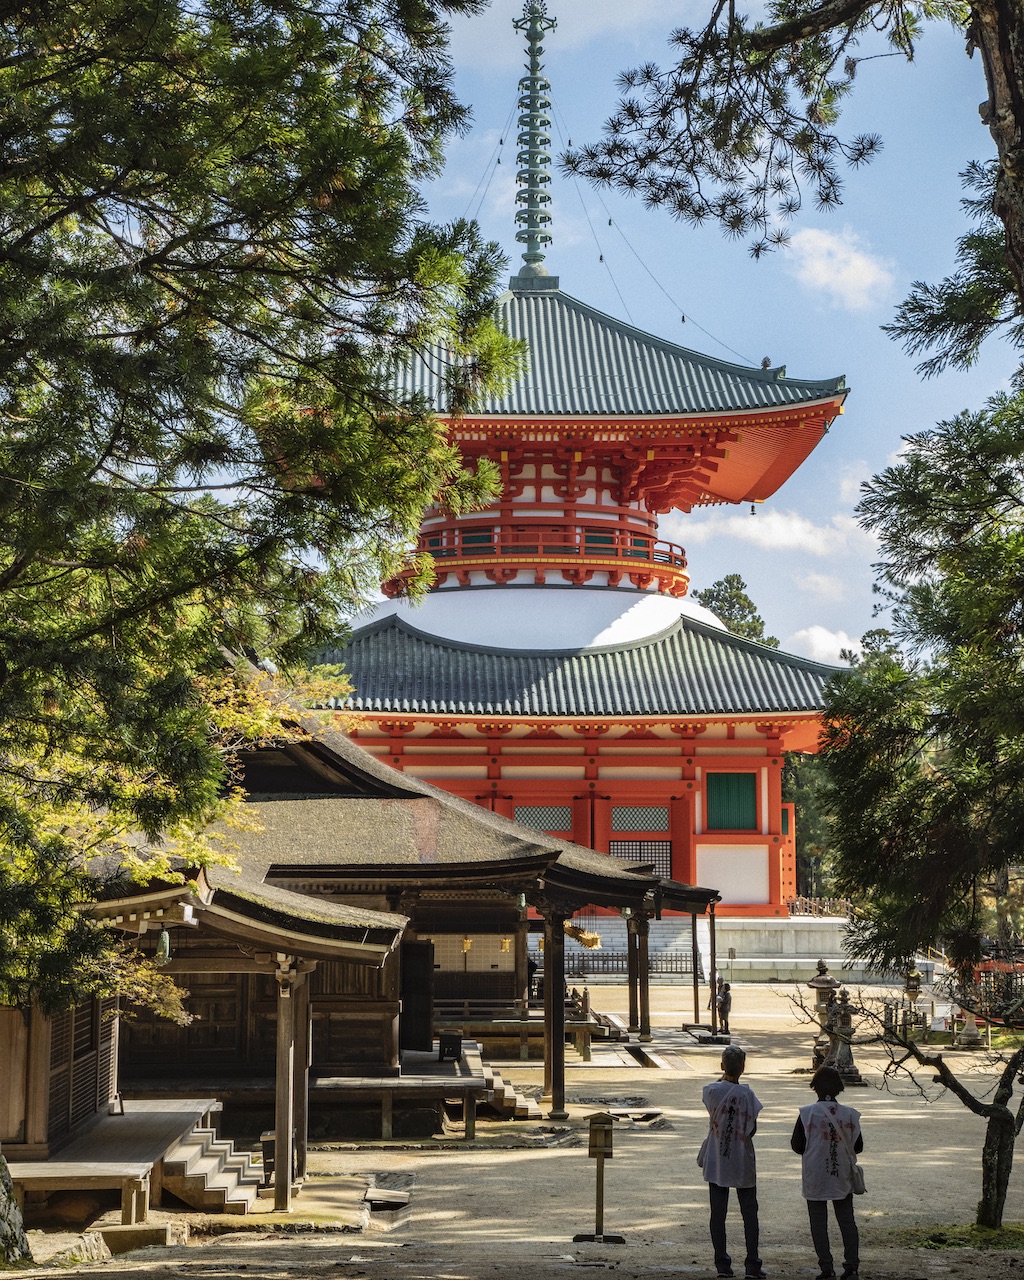 The Danjo Garan temple complex Osaka